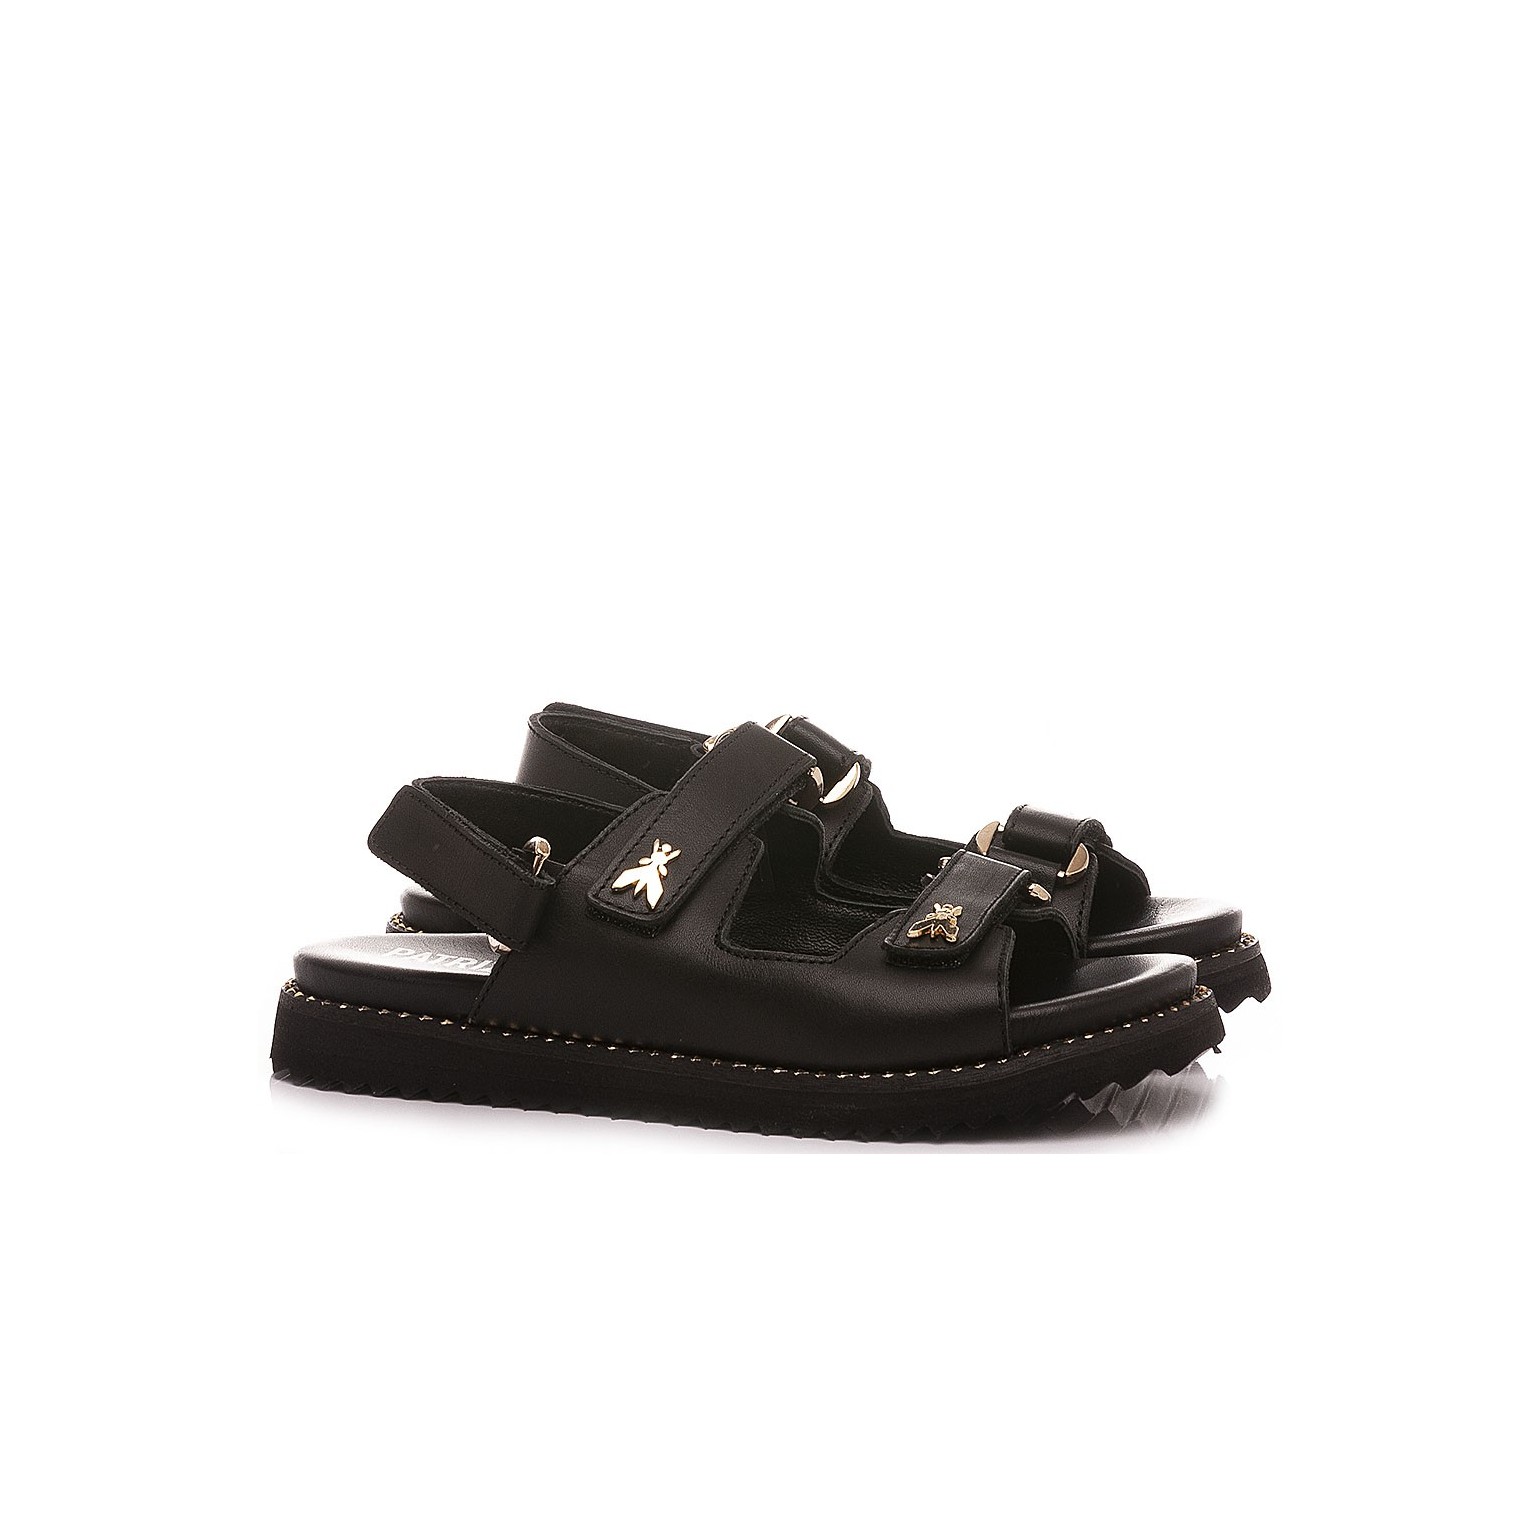 Patrizia Pepe Girl's Sandals PPJ76.01 Black